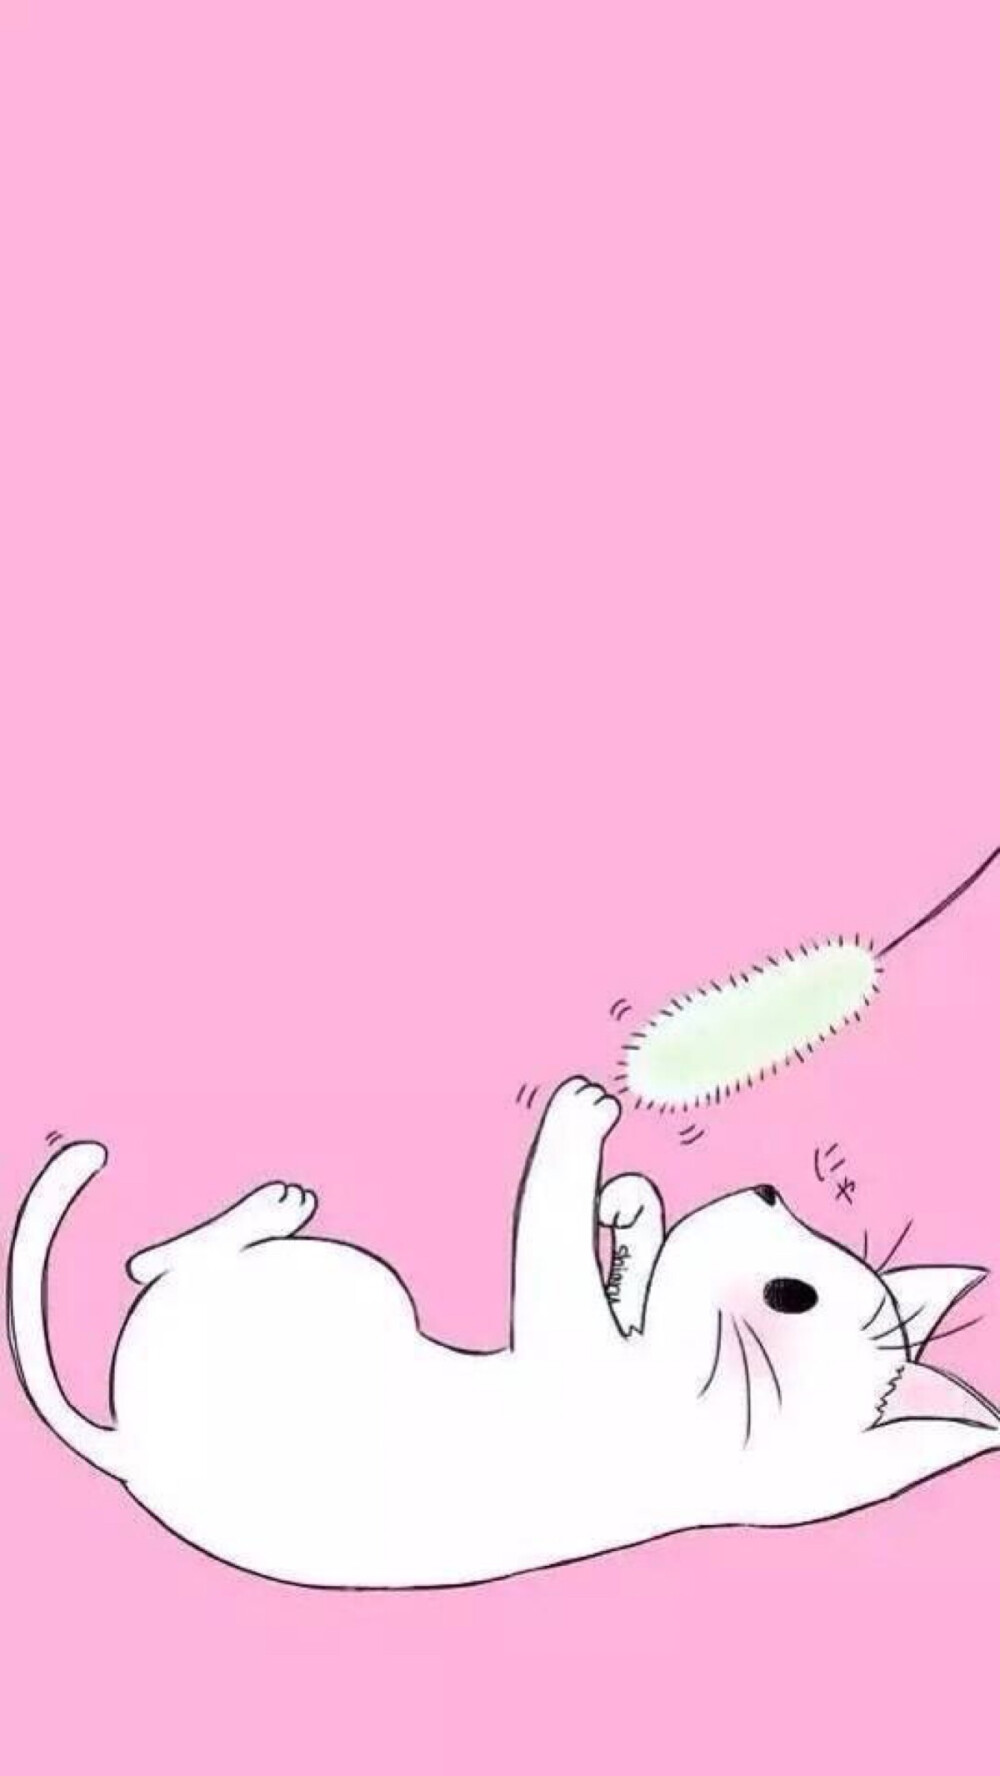 壁纸粉红色pink小猫咪超可爱少女心